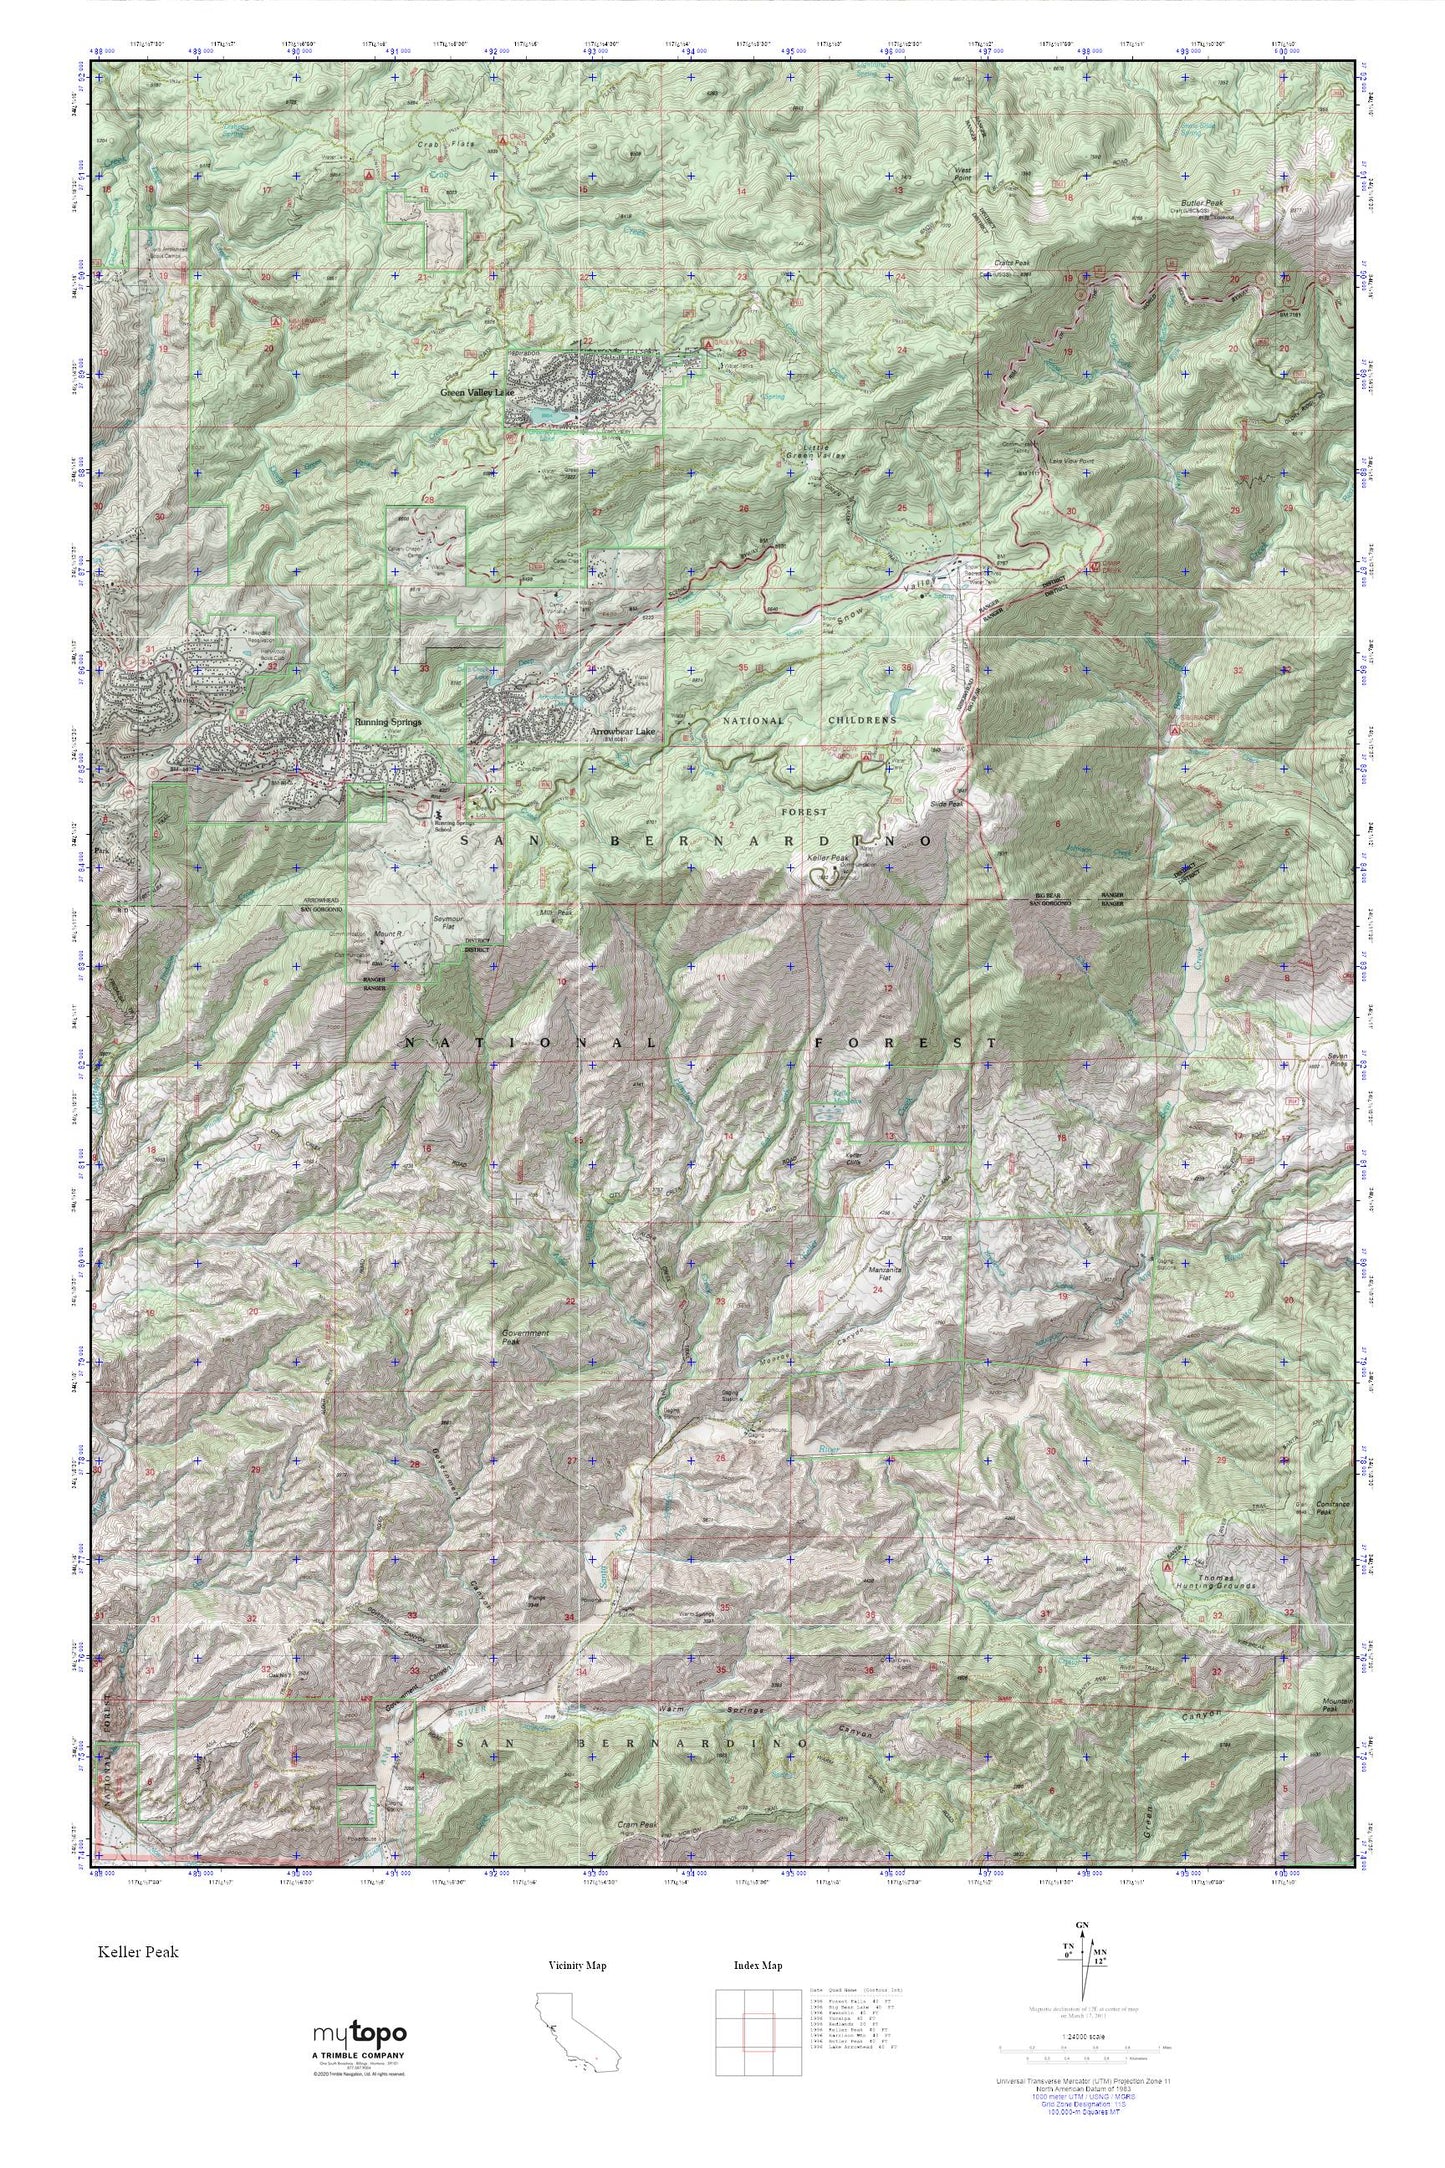 Keller Peak MyTopo Explorer Series Map Image